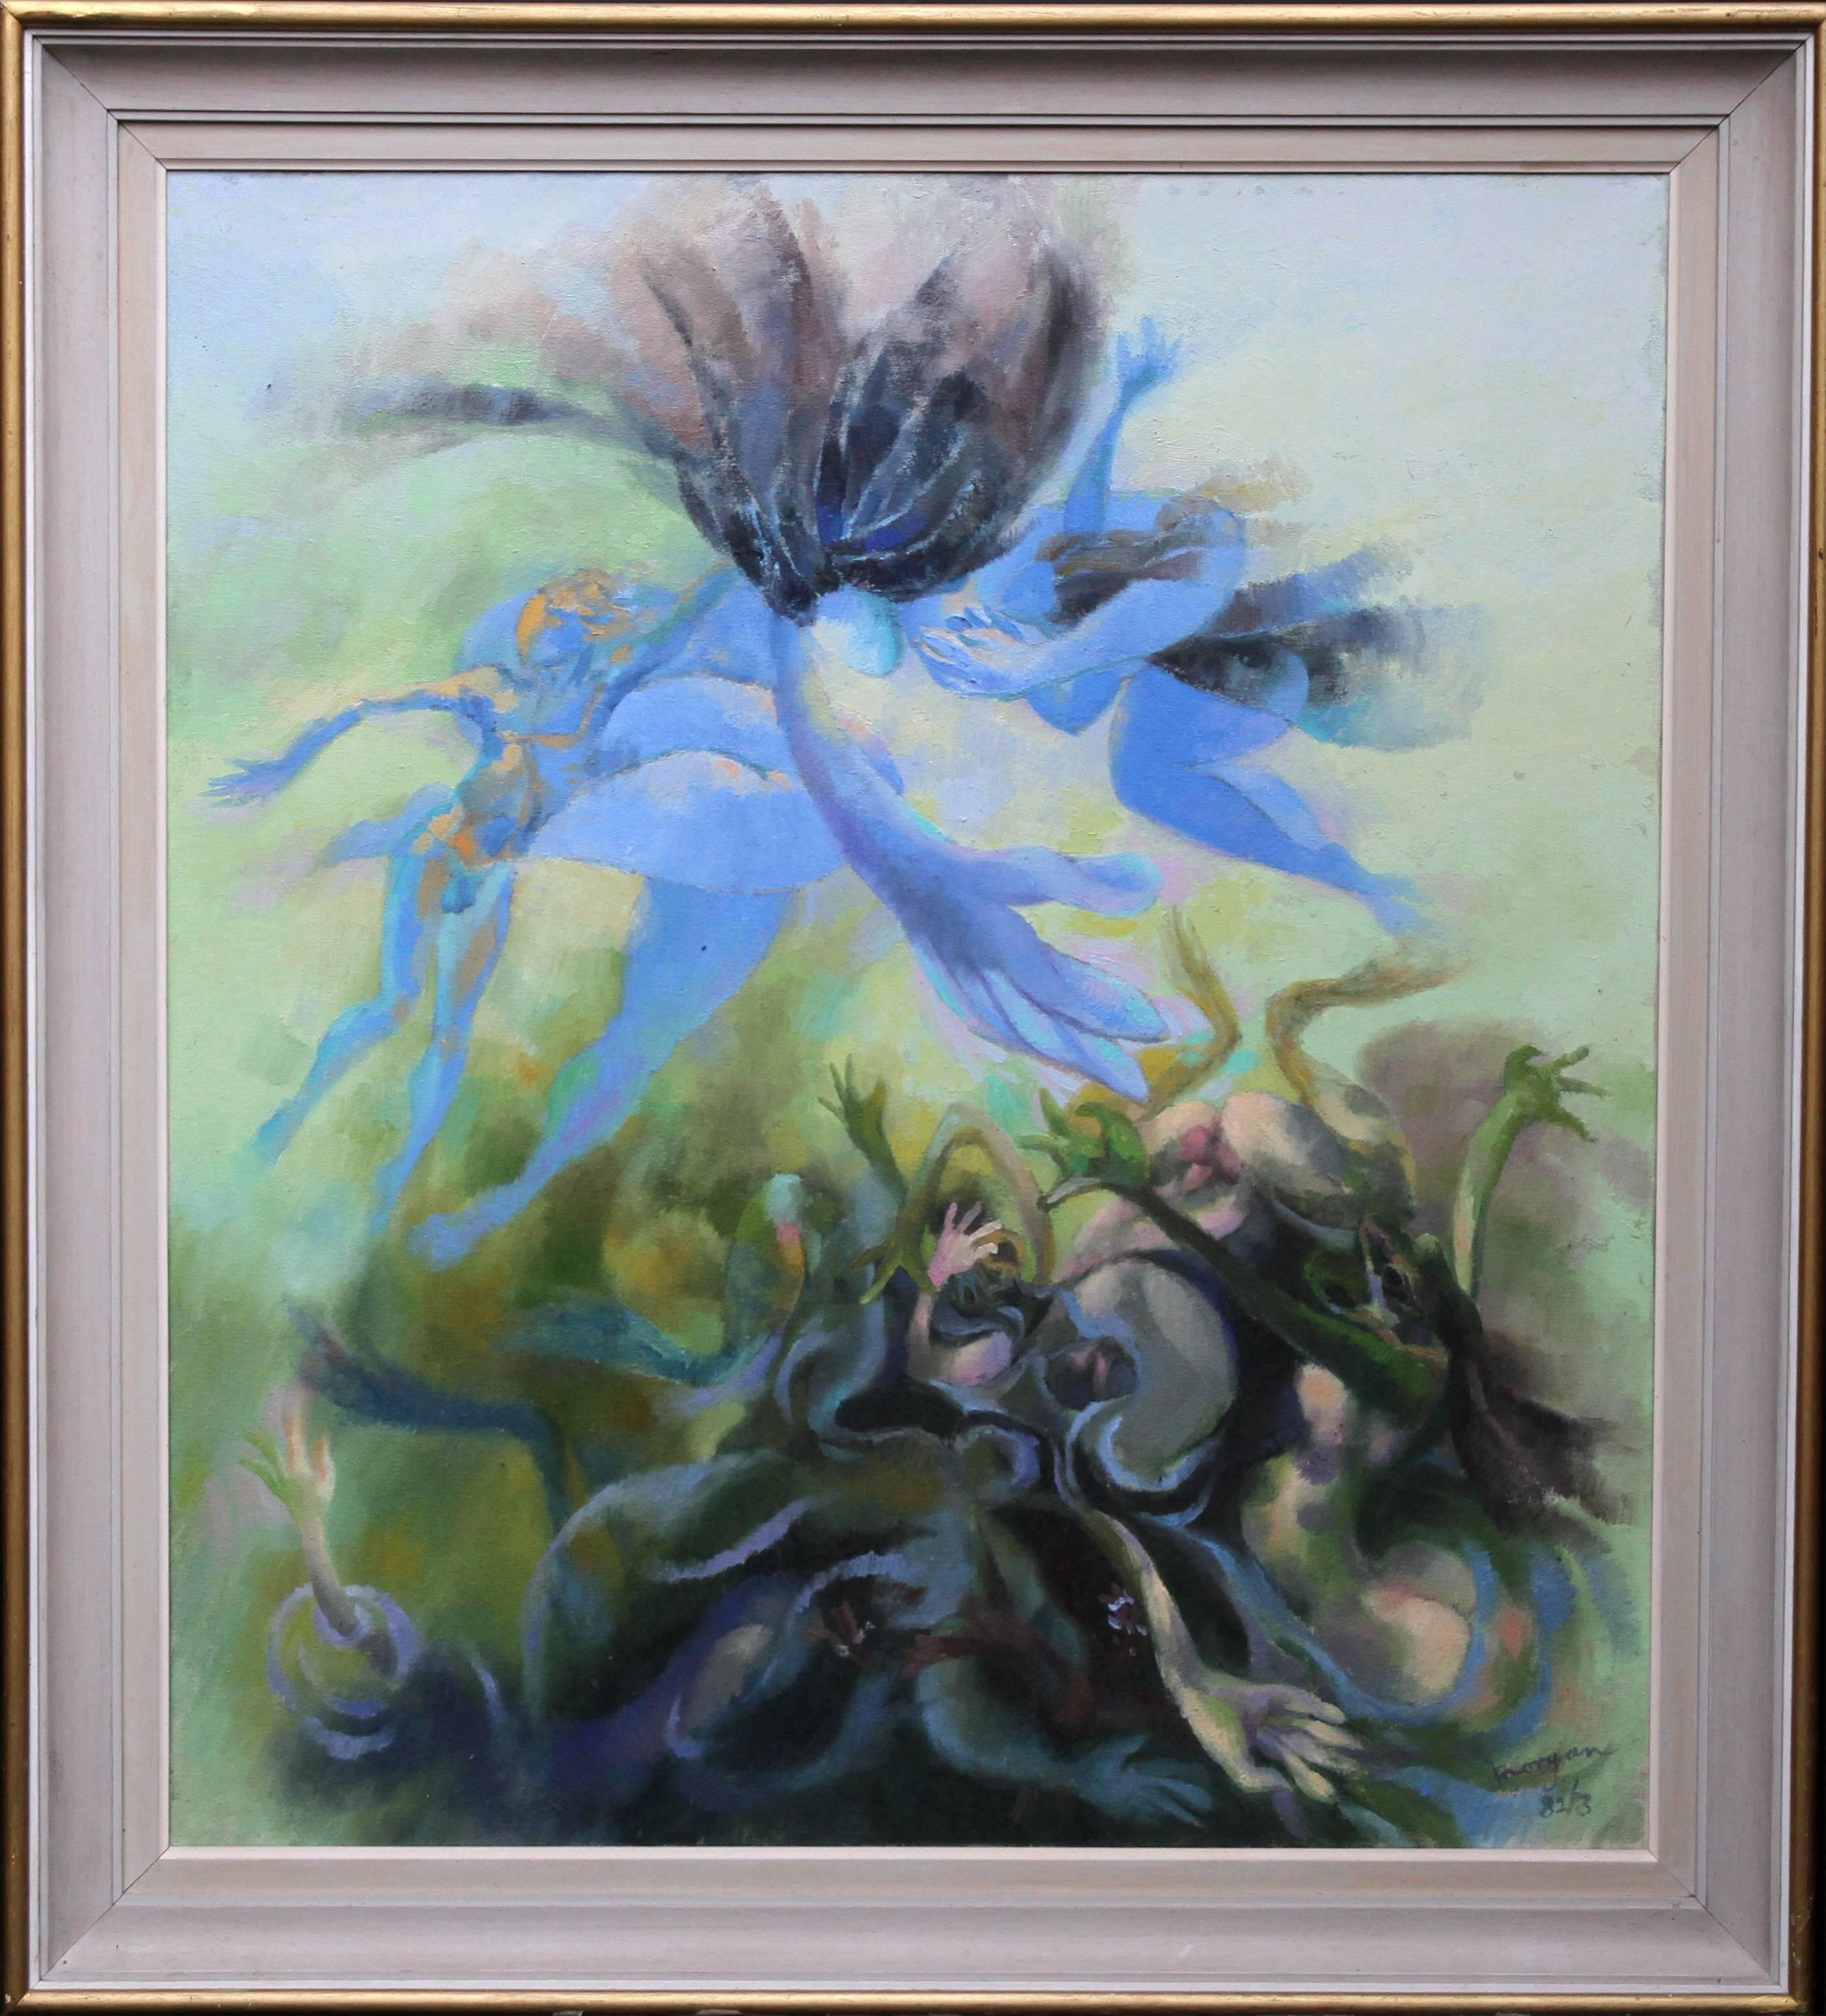 Landscape Painting Glyn Morgan - Leto Cursing The Lycians - Peinture à l'huile abstraite galloise de la mythologie grecque en bleu